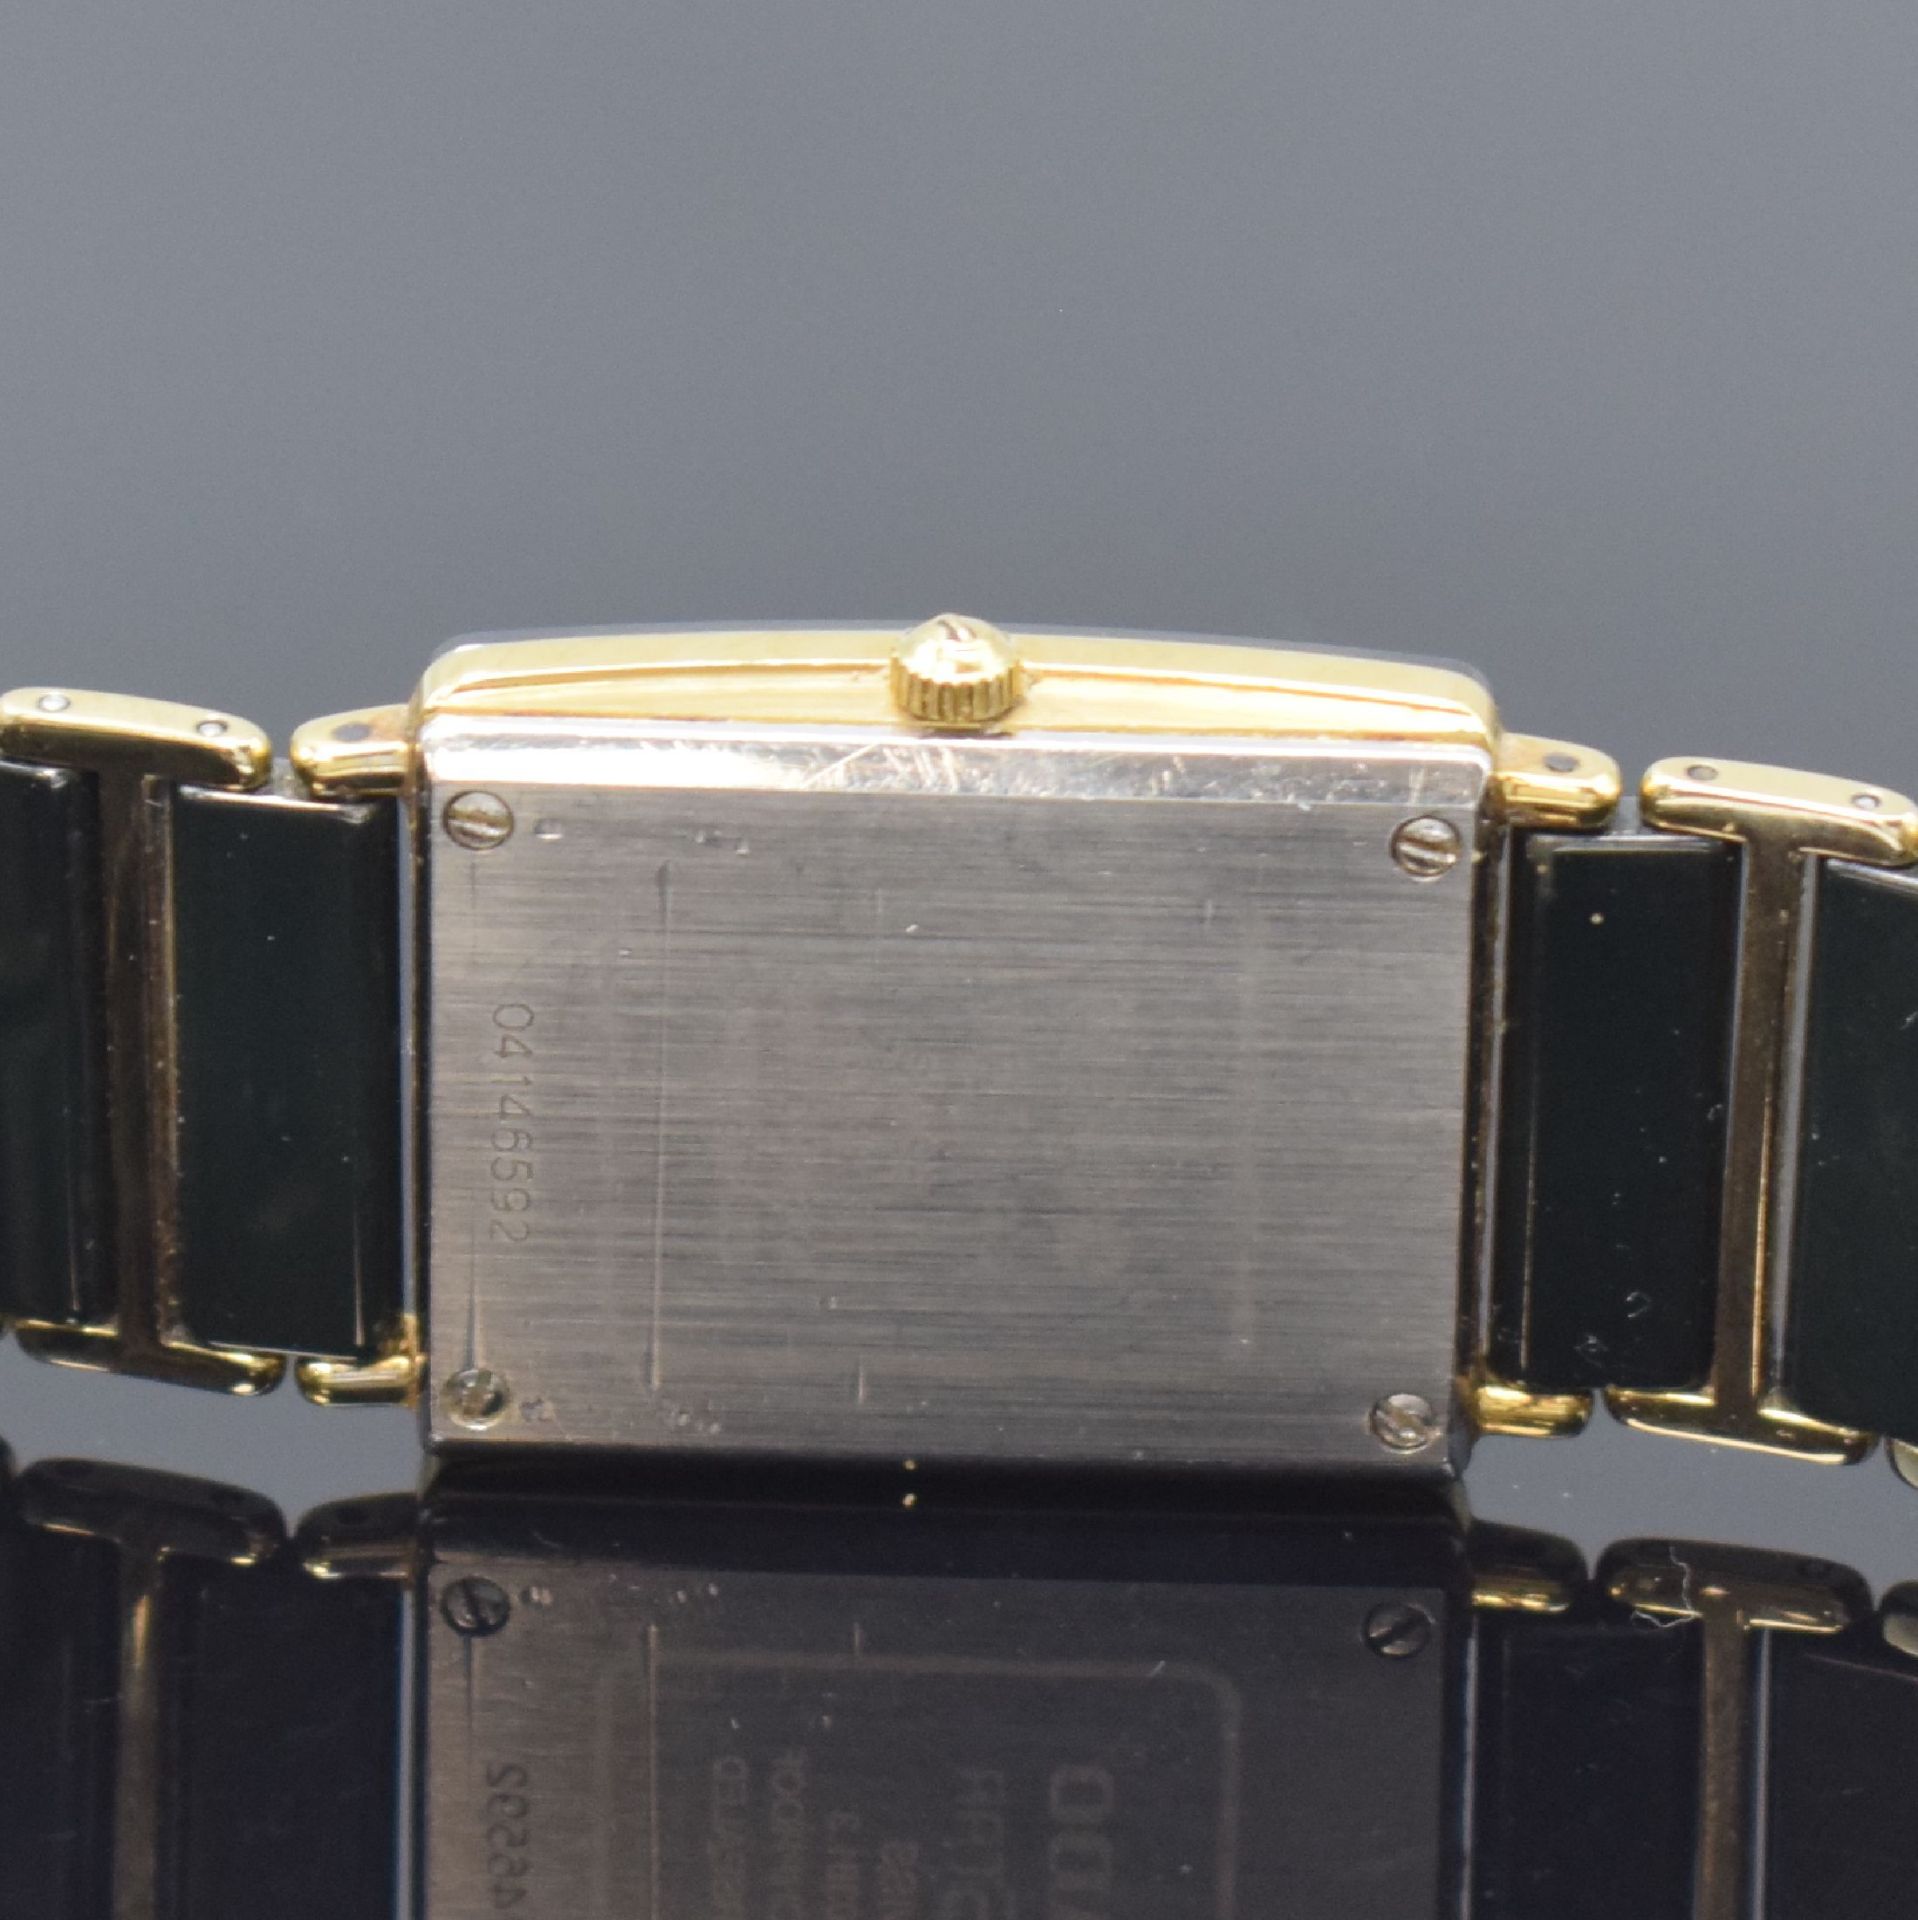 RADO Diastar Armbanduhr Referenz 160.0381.3, Schweiz um - Image 5 of 5